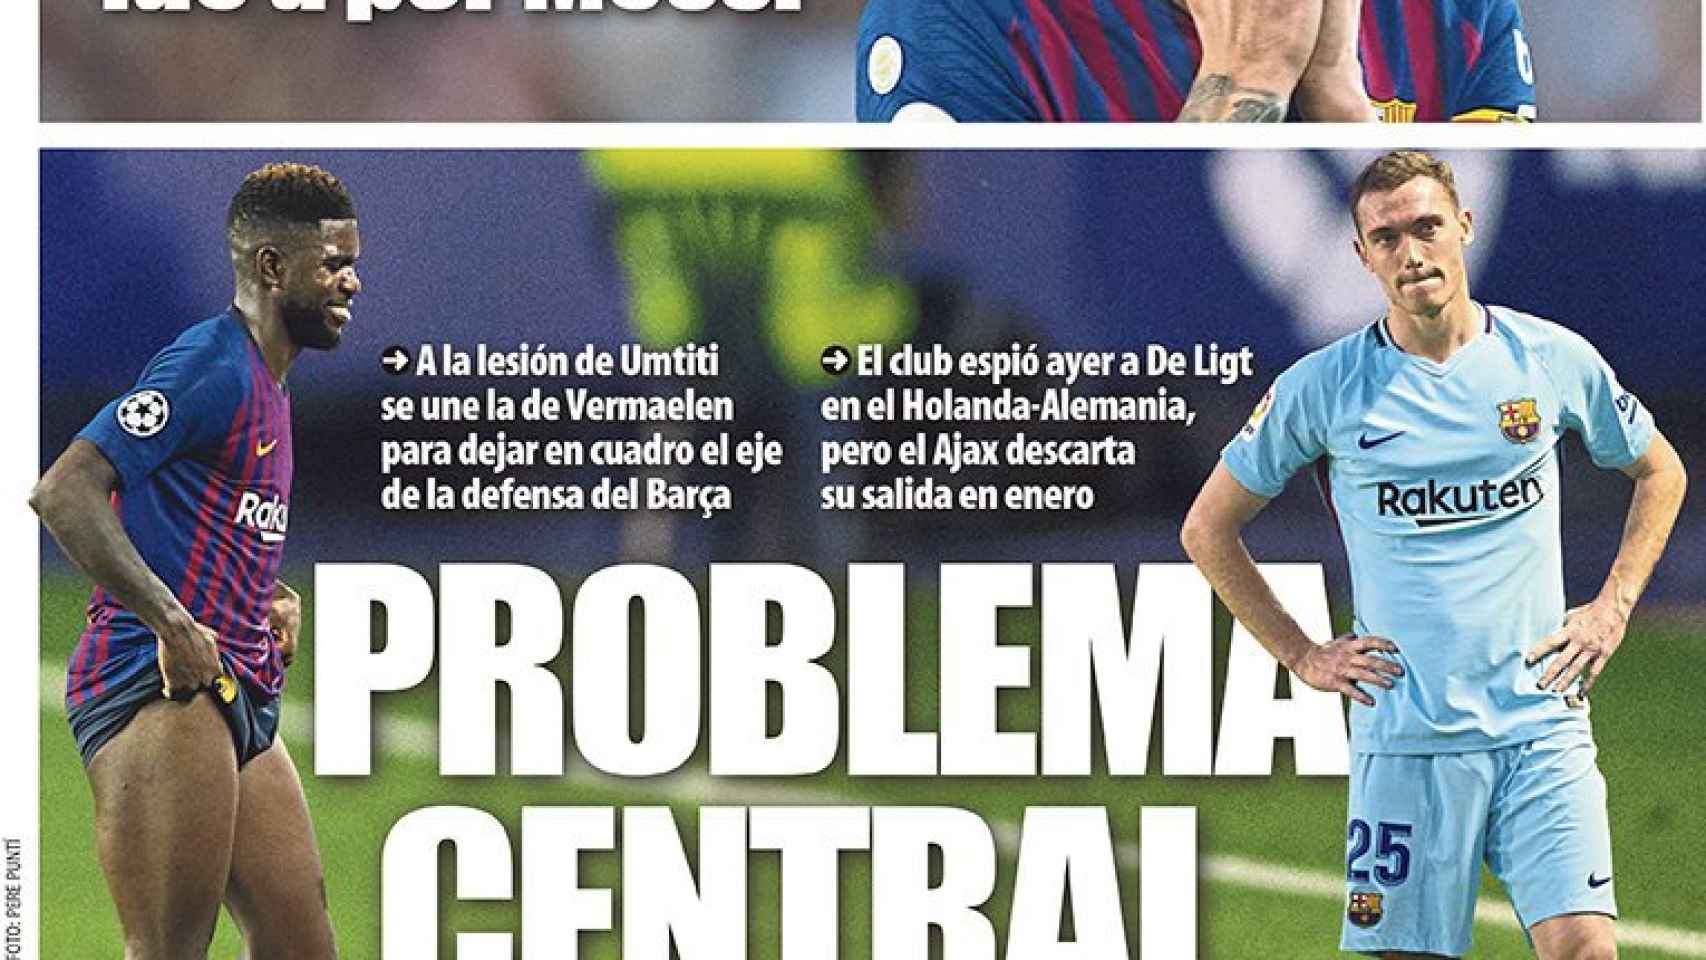 La portada del diario Mundo Deportivo (14/10/2018)